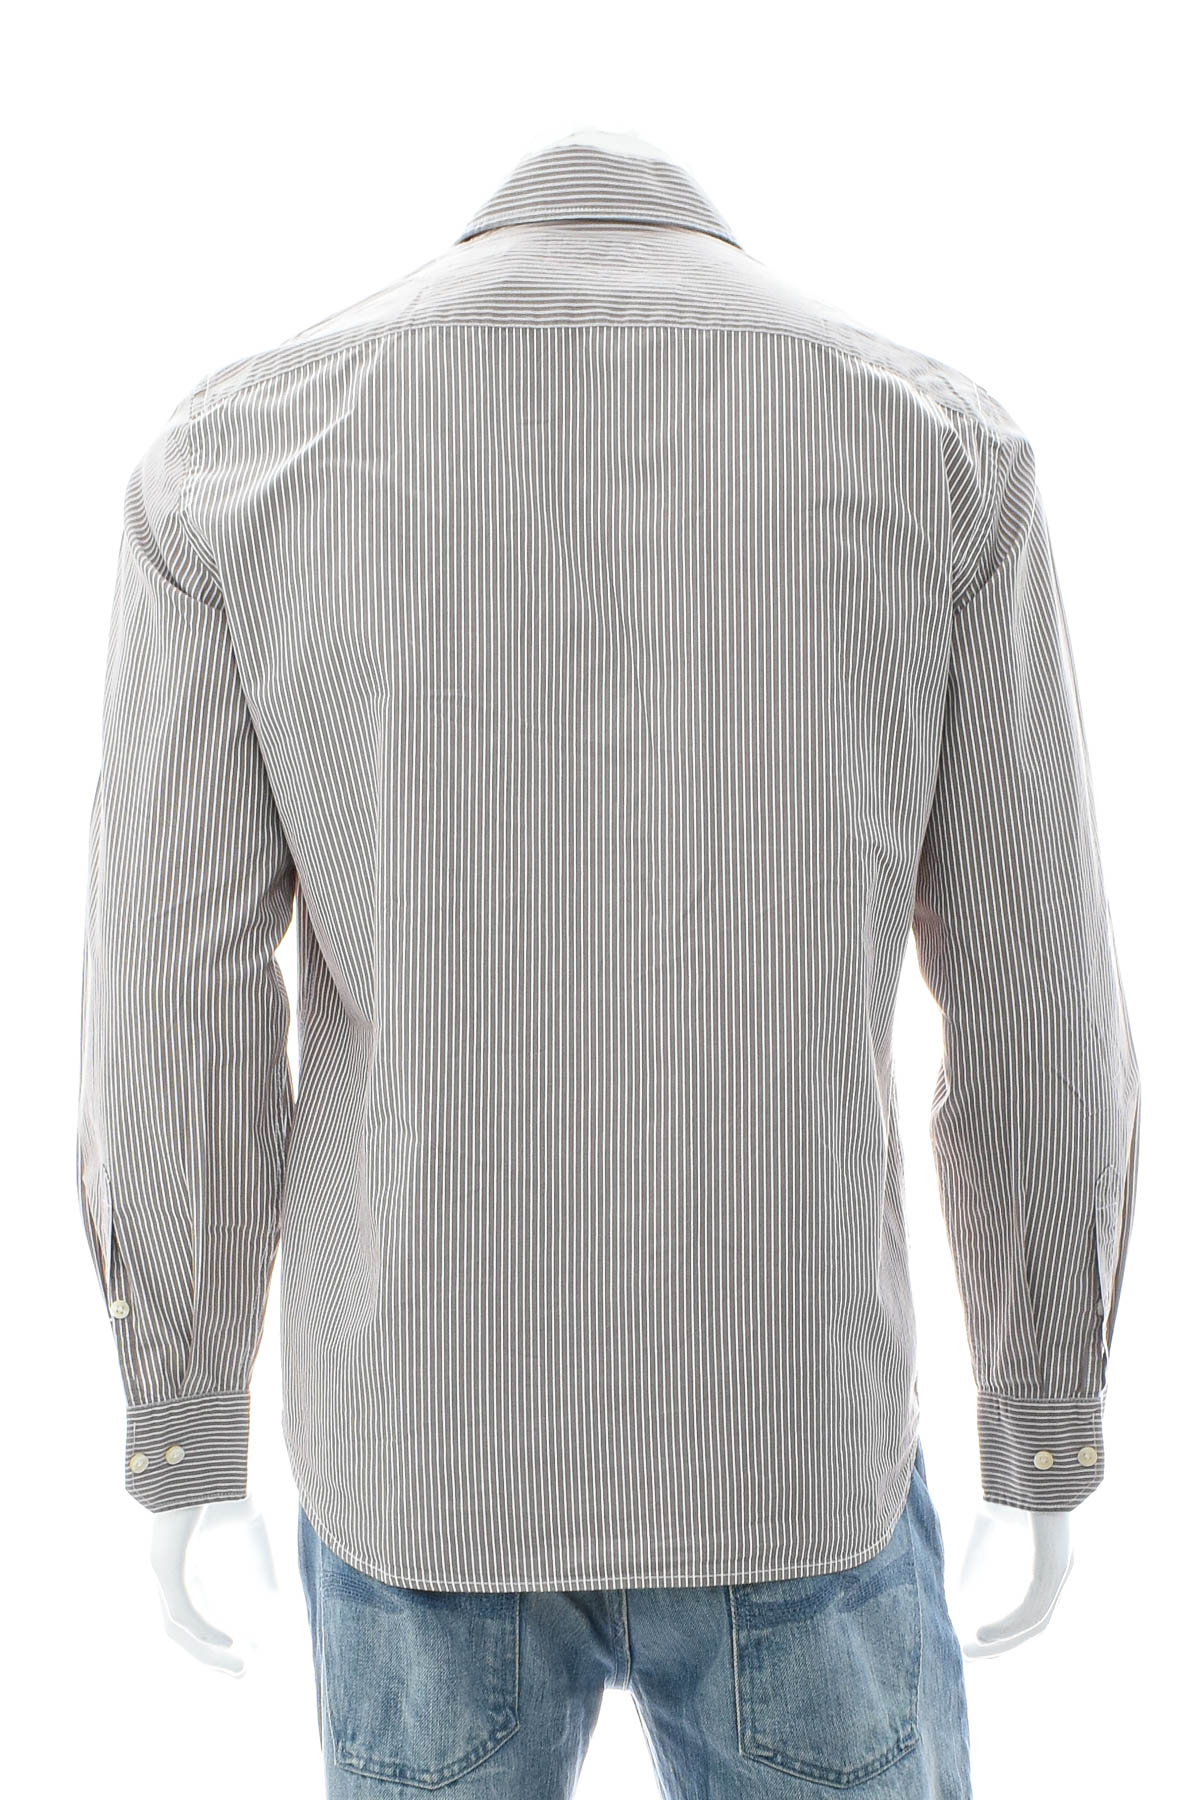 Ανδρικό πουκάμισο - Marc O' Polo - 1